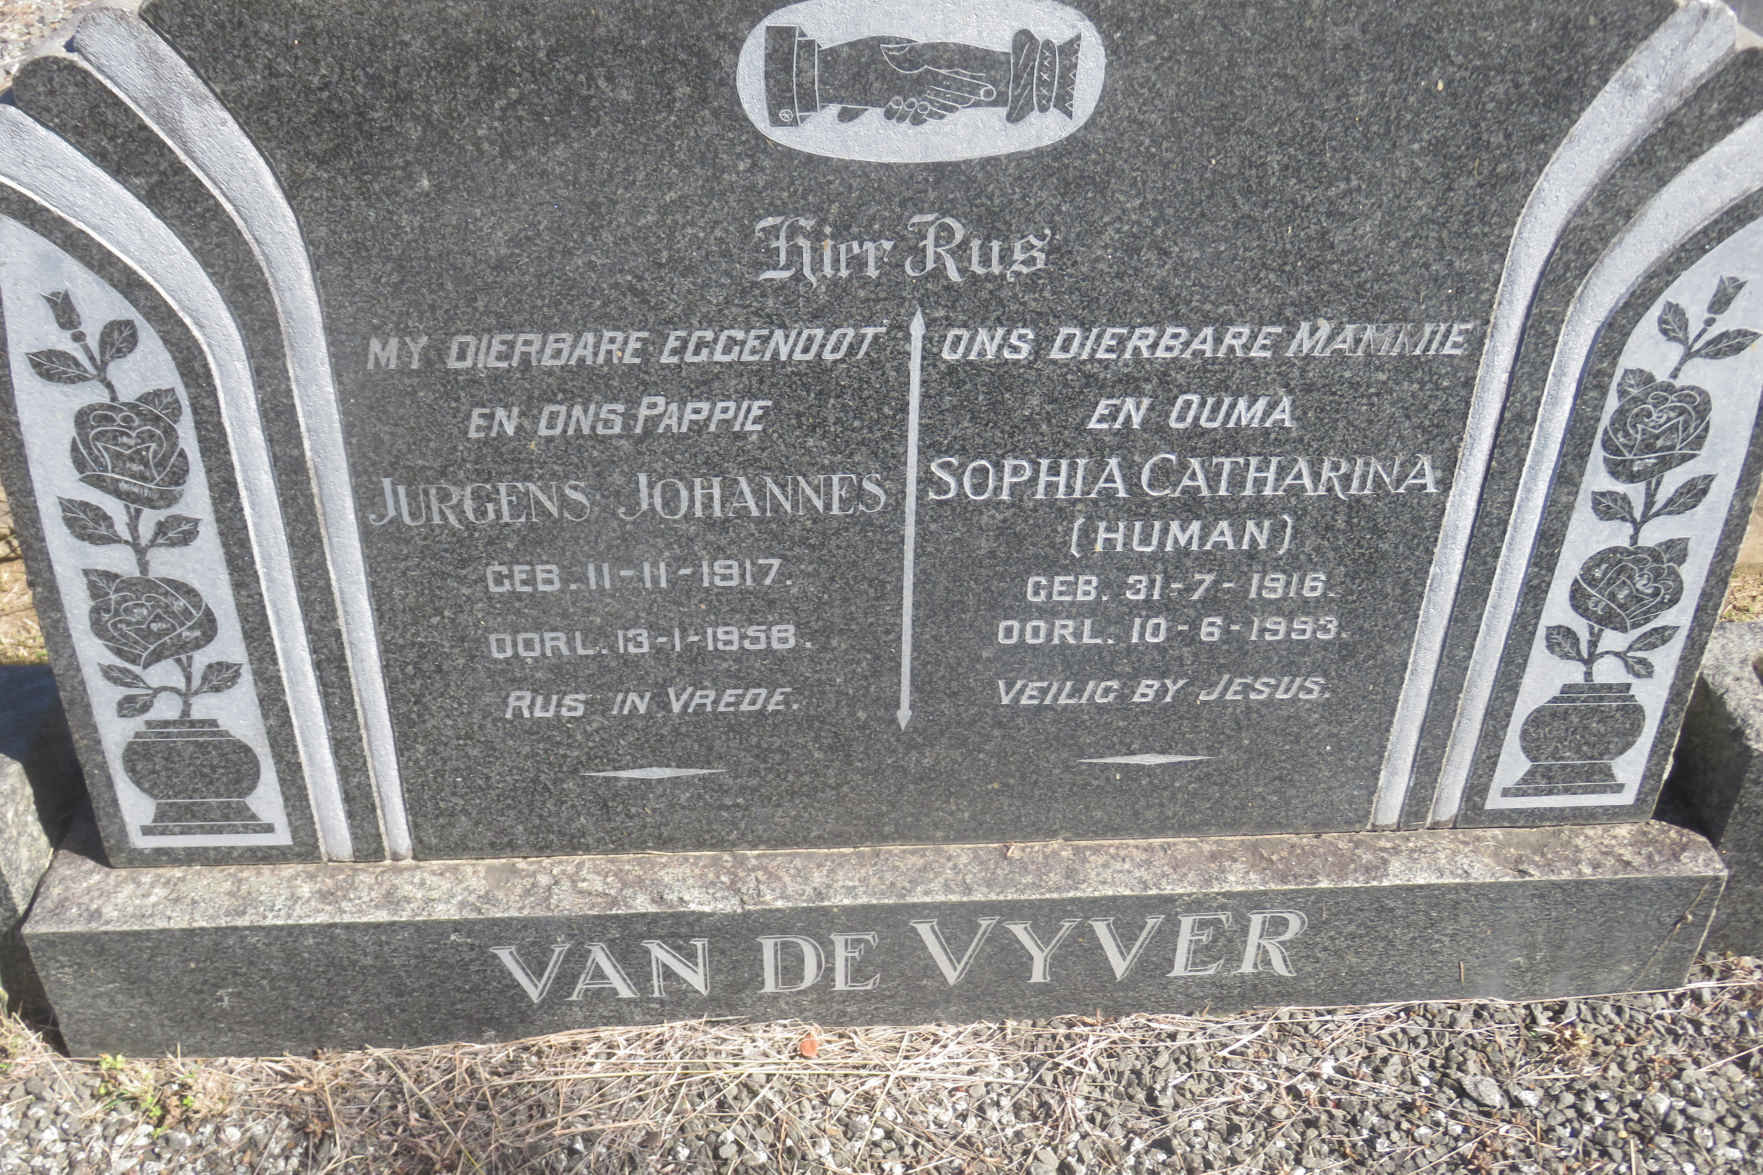 VYVER Jurgens Johannes, van der 1917-1958 & Sophia Catharina HUMAN 1916-1993